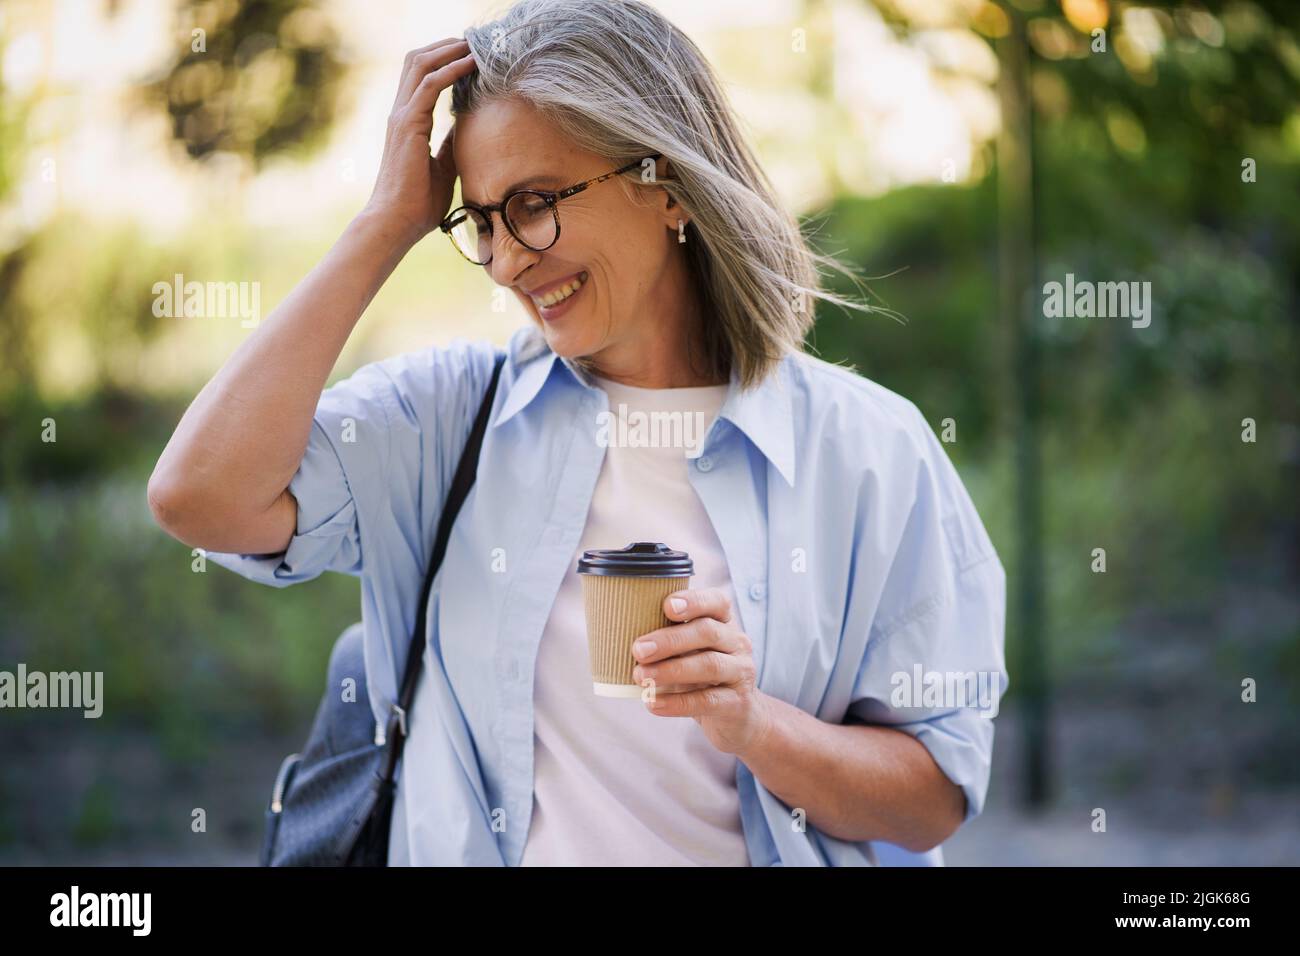 Charmante femme d'âge mûr boit du café sur la route en fixant ses cheveux. Une femme d'âge mûr passe du temps libre à voyager dans la vieille ville européenne en dégustant une tasse de thé et de café. Femme aux cheveux gris dans une ambiance décontractée avec sac à dos. Banque D'Images